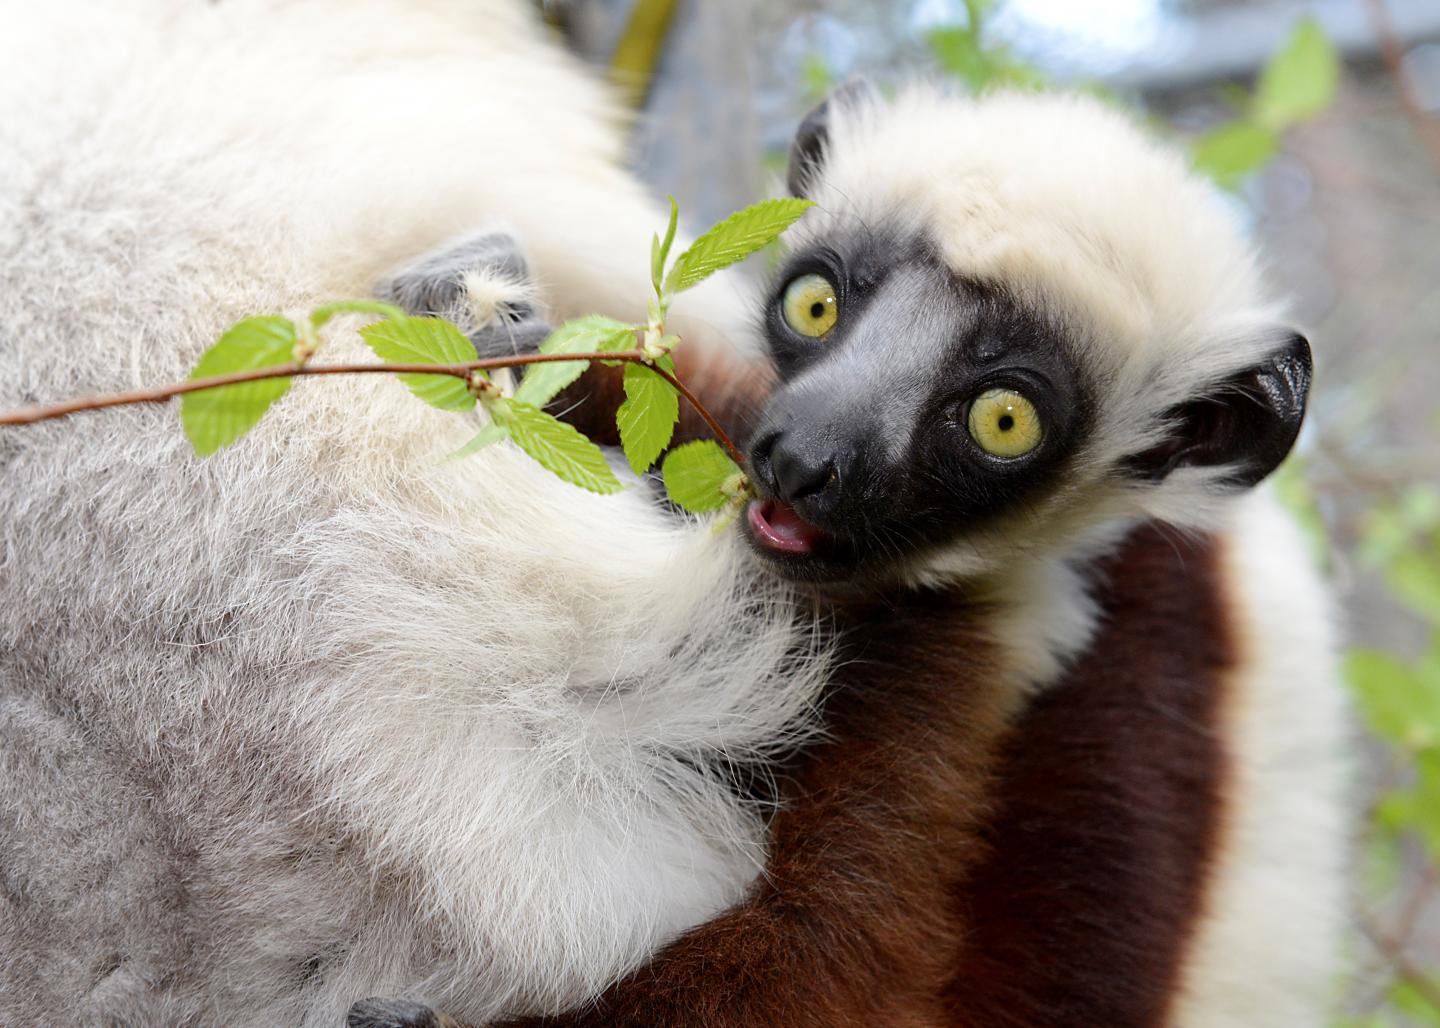 A Sifaka Lemur Munching on a Leaf